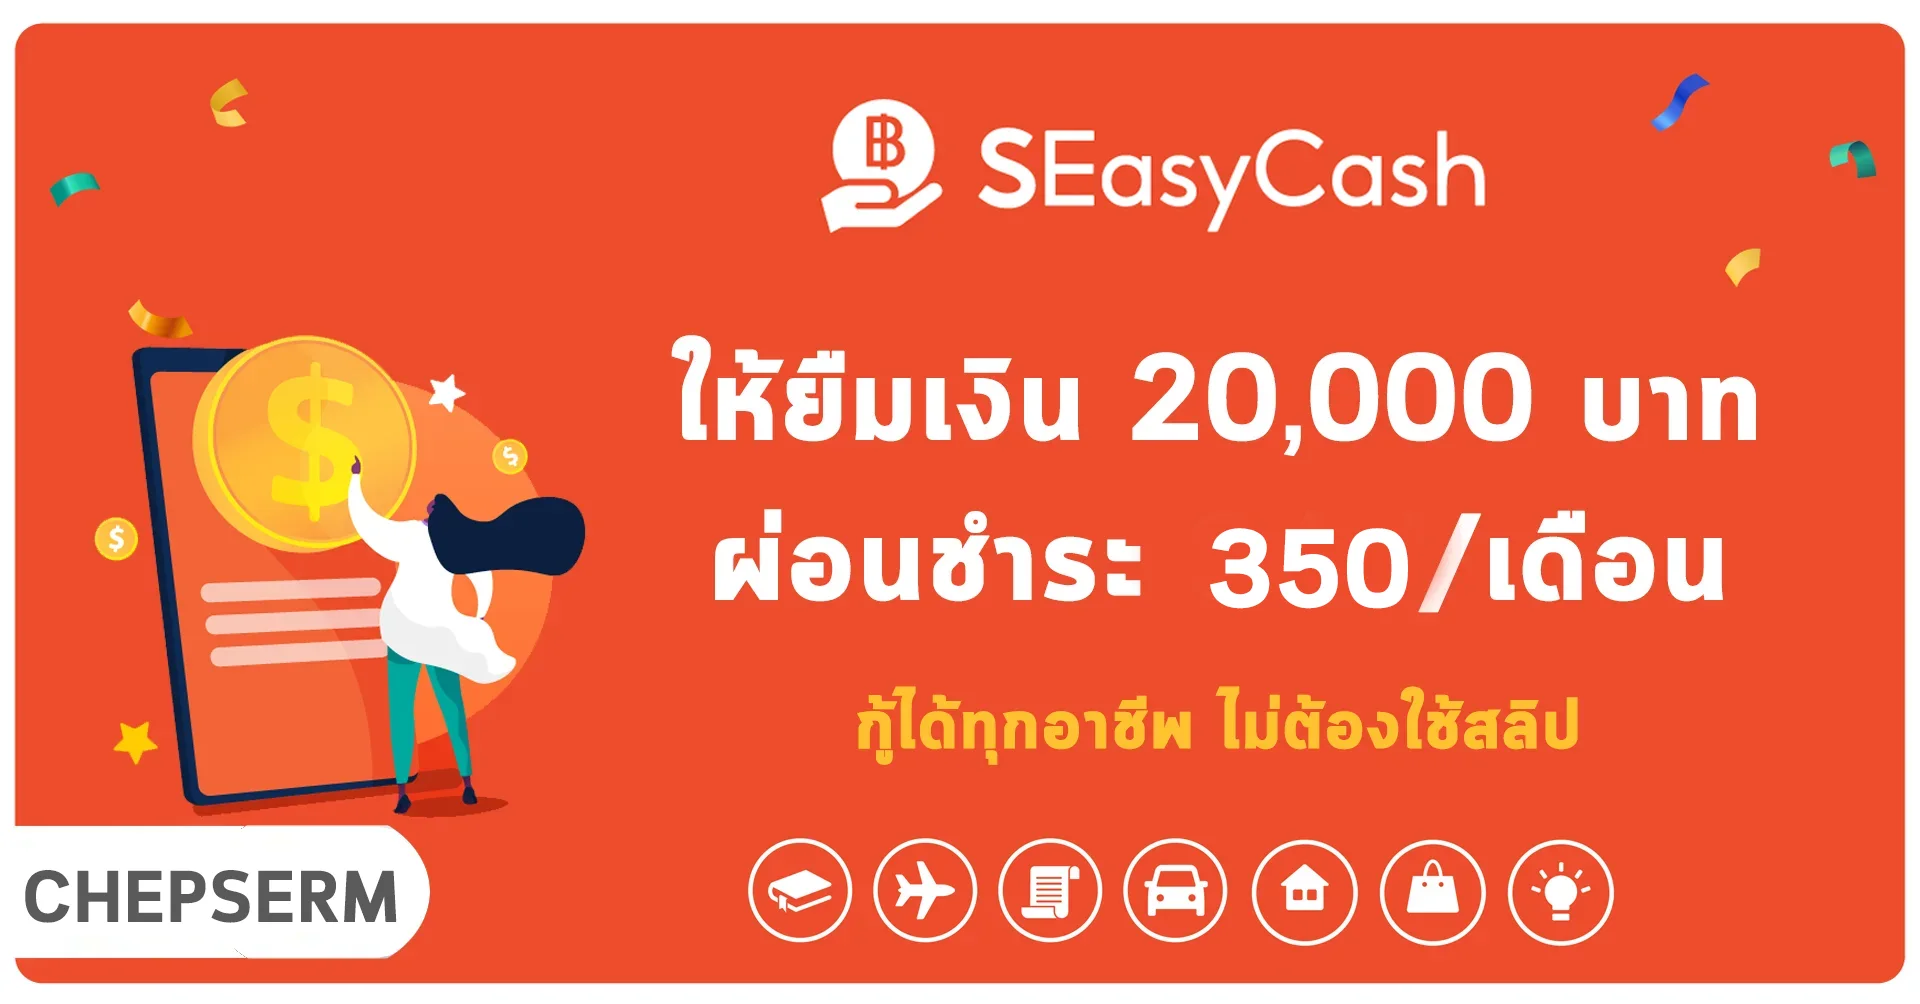 สินเชื่อ SEasyCash ปล่อยยืมสูงสุด 20,000 บาท ผ่อน 350 บาท/เดือน